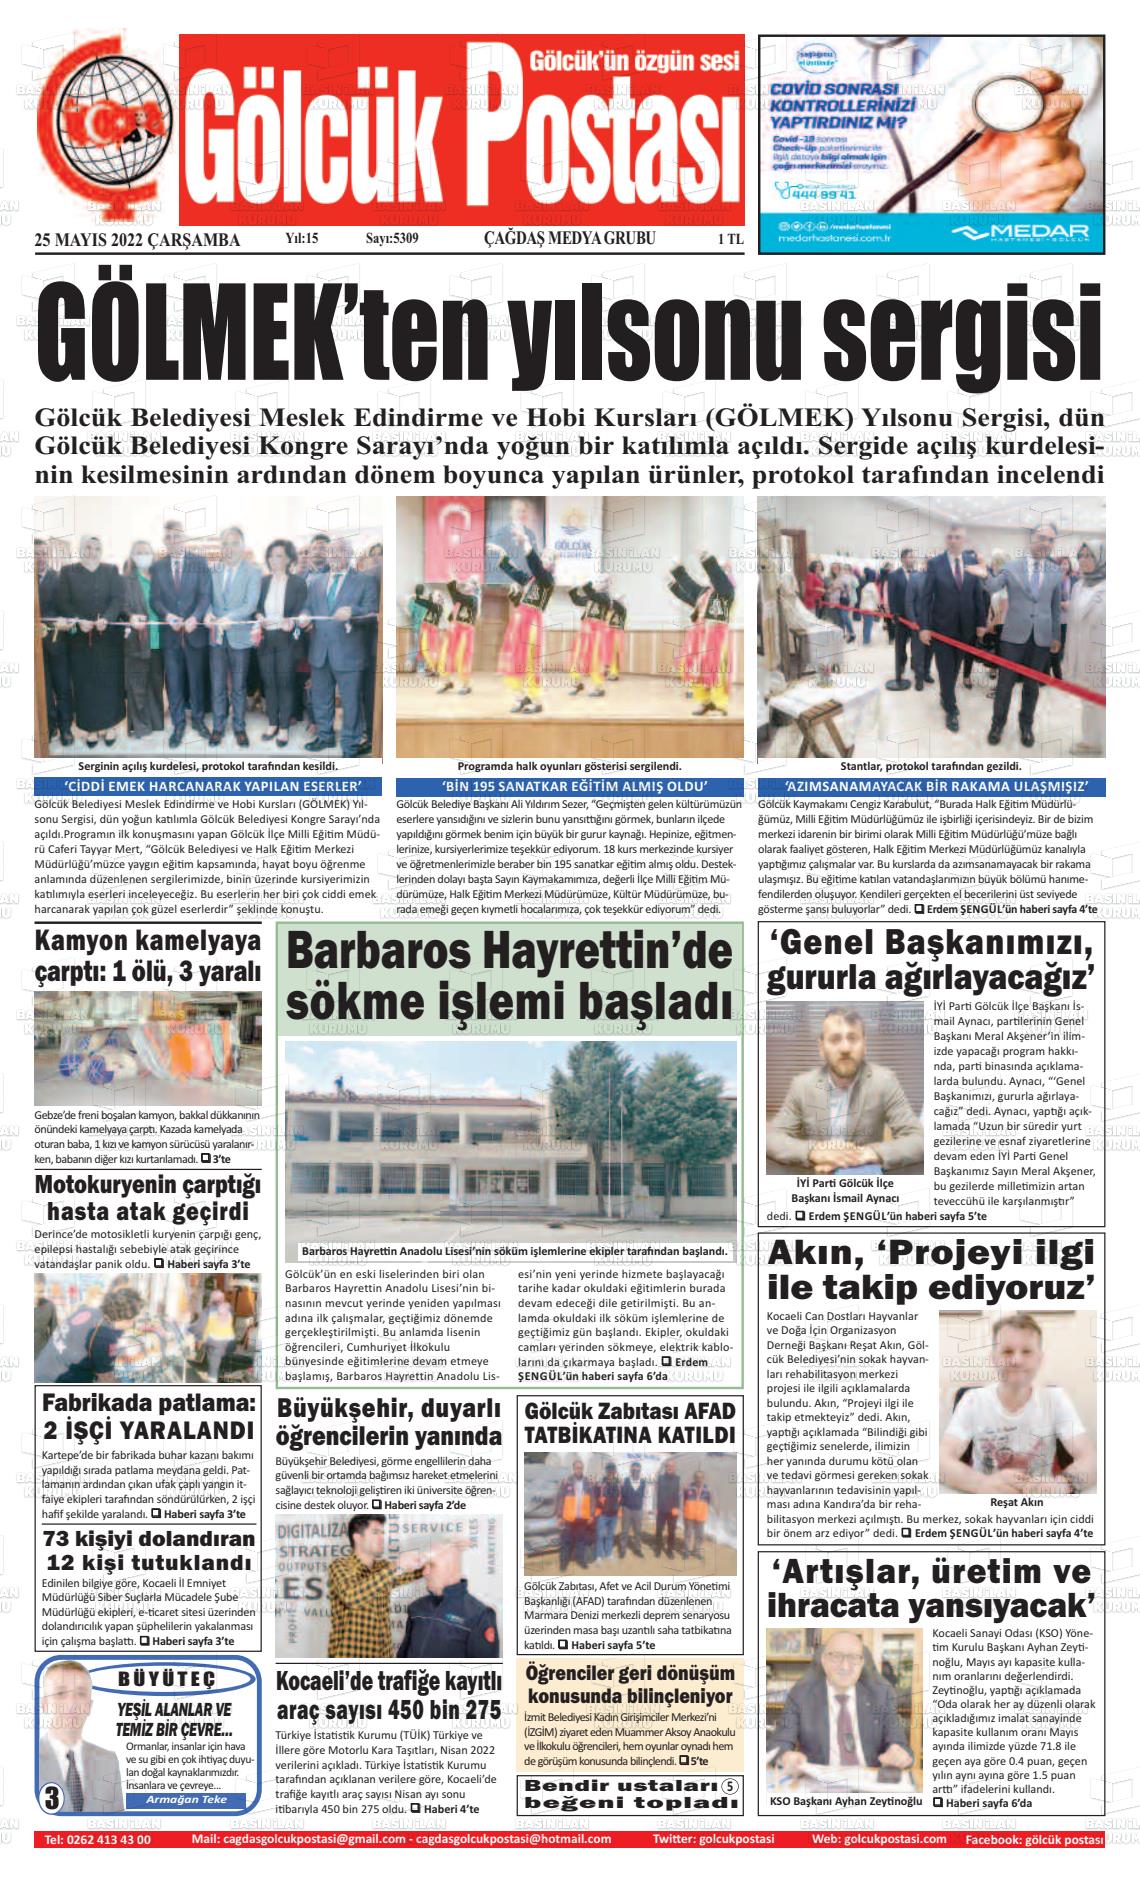 25 Mayıs 2022 Gölcük Postasi Gazete Manşeti